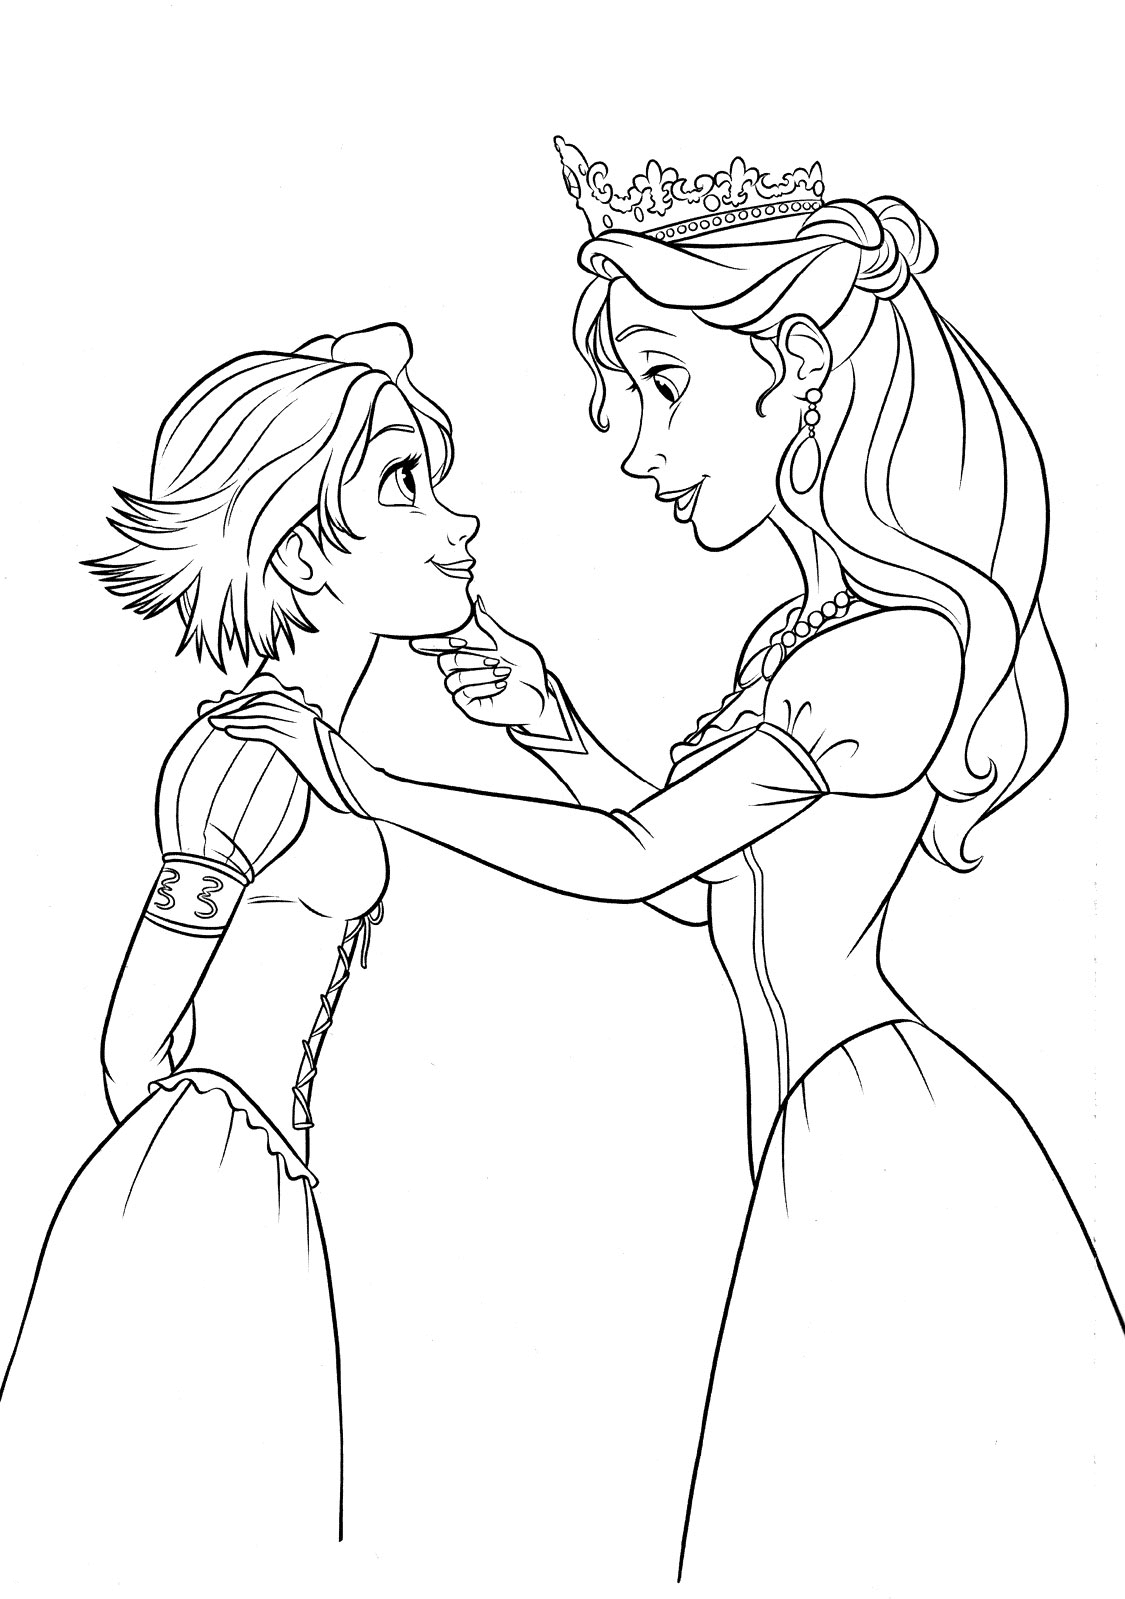 《长发公主》中的阿丽亚娜女王和长发公主